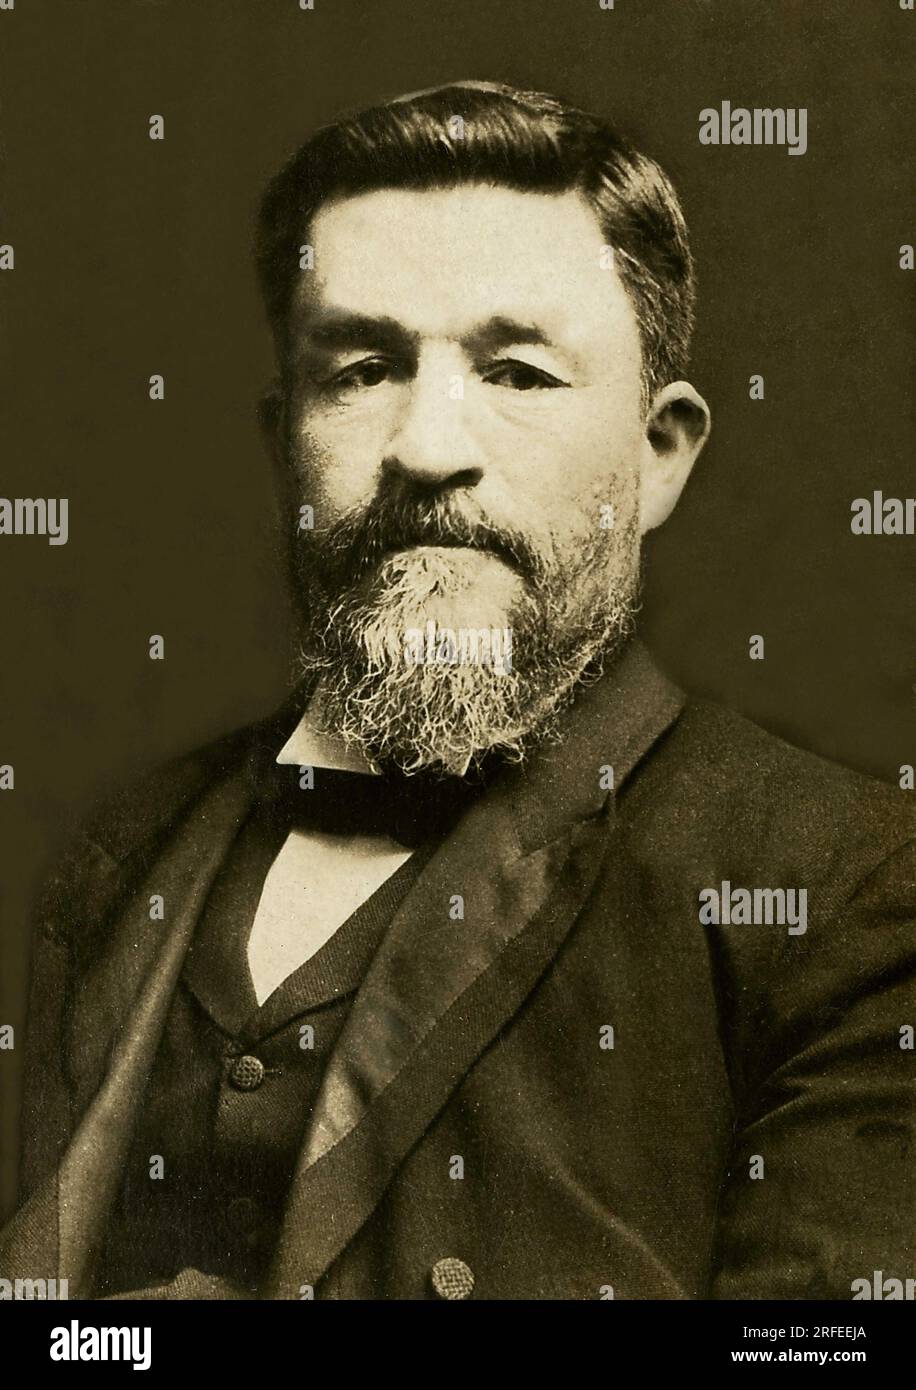 Portrait de Christian Dewet (1854-1922), homme Politique et Allgemeine sud-Africain. Fotografie, Debüt du 20e siècle. Stockfoto